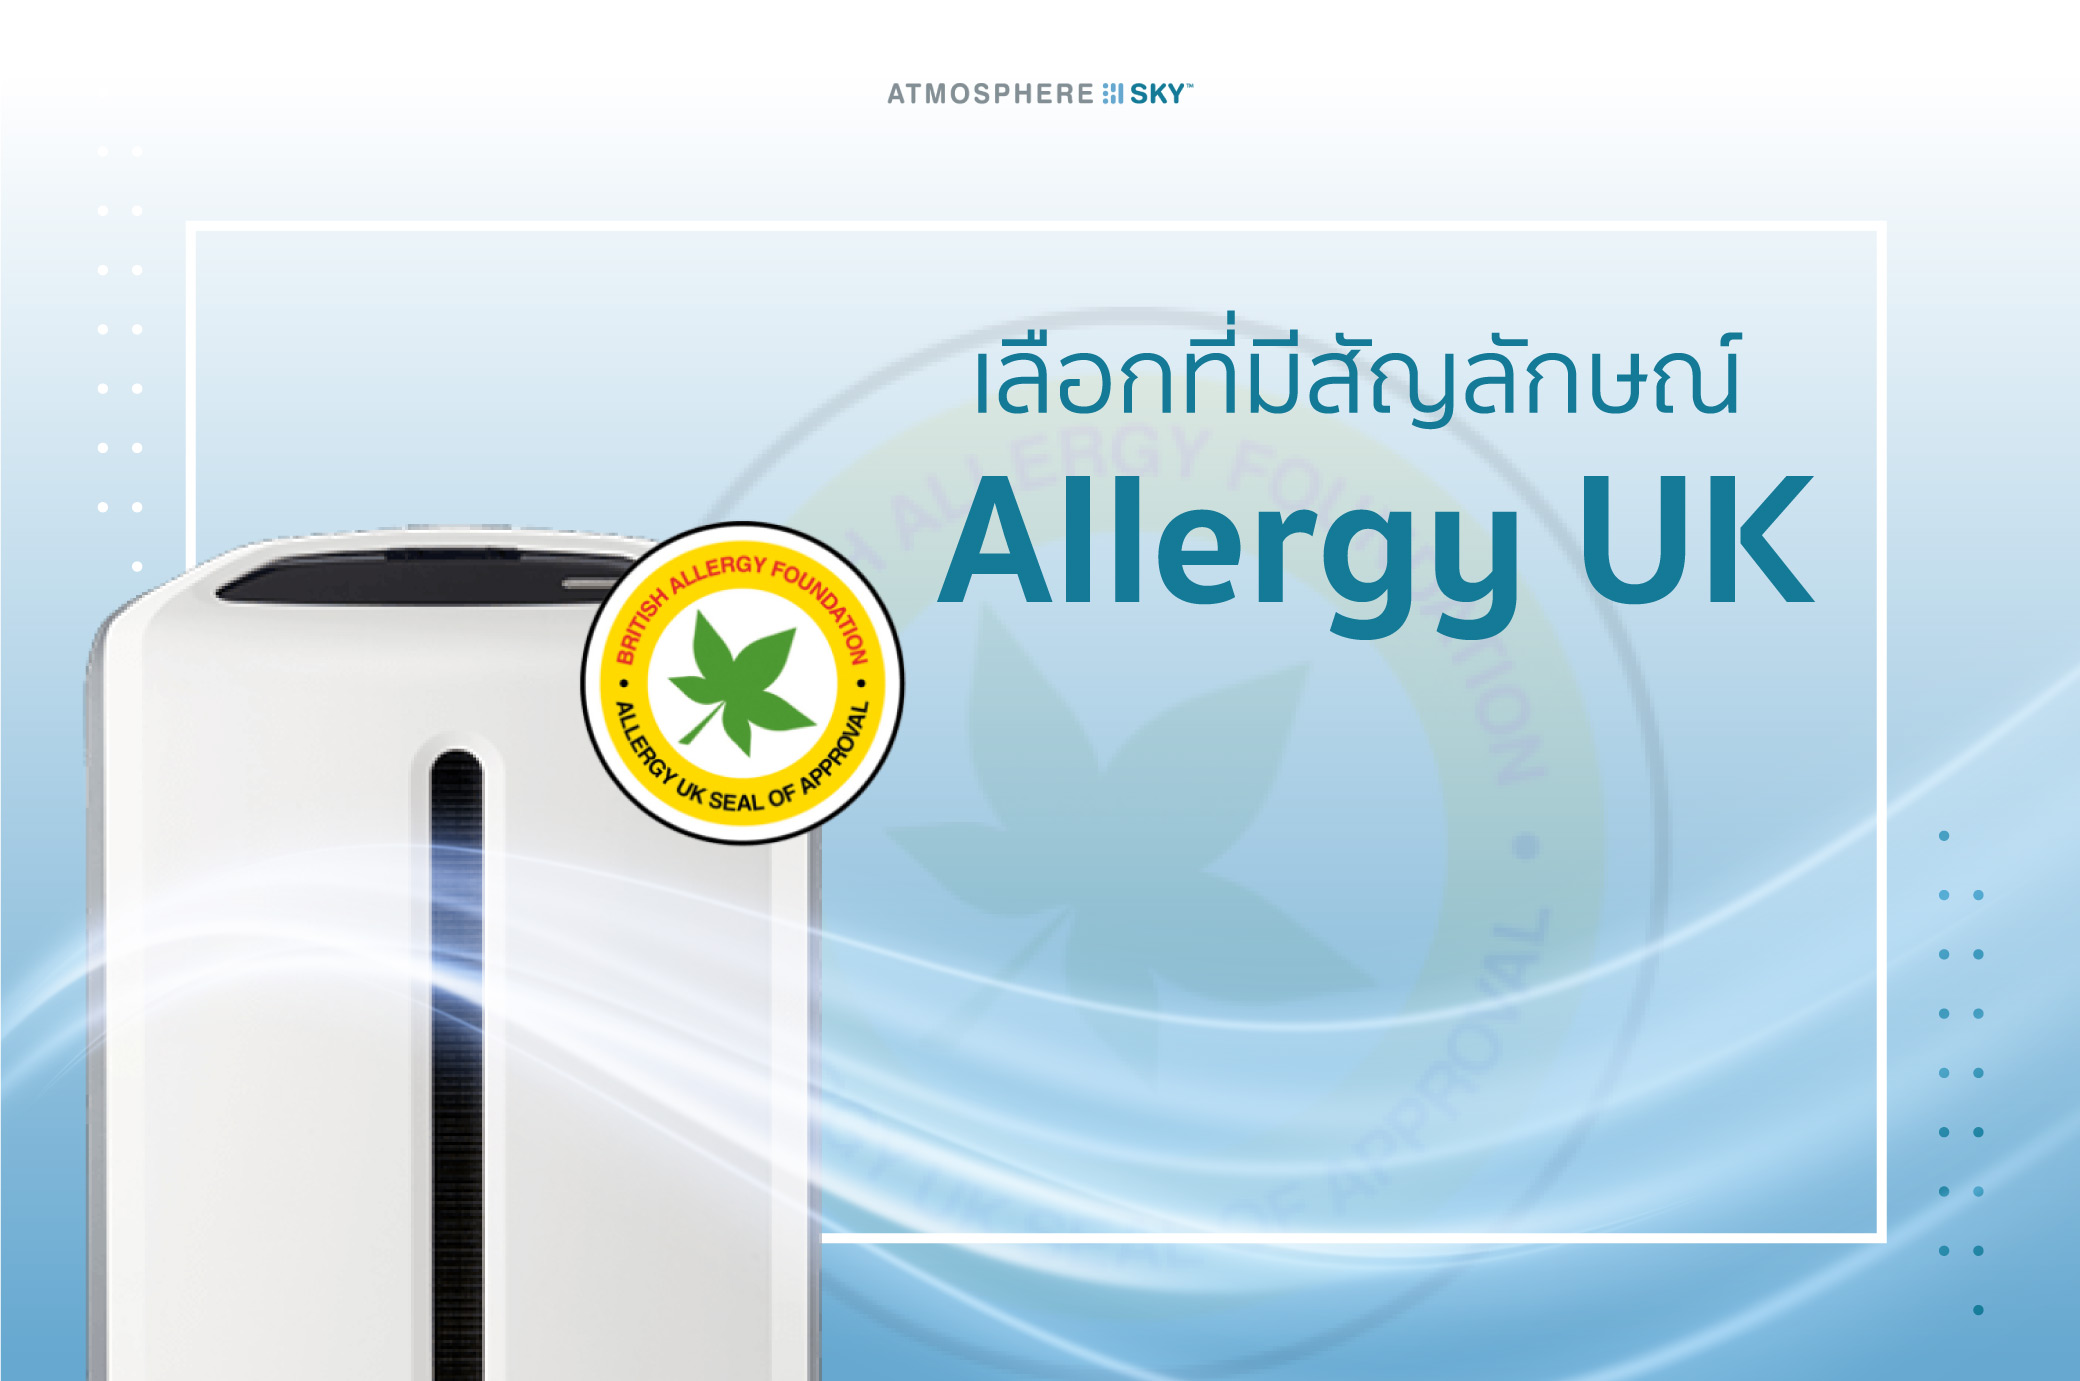 เลือกที่มีสัญลักษณ์ Allergy UK